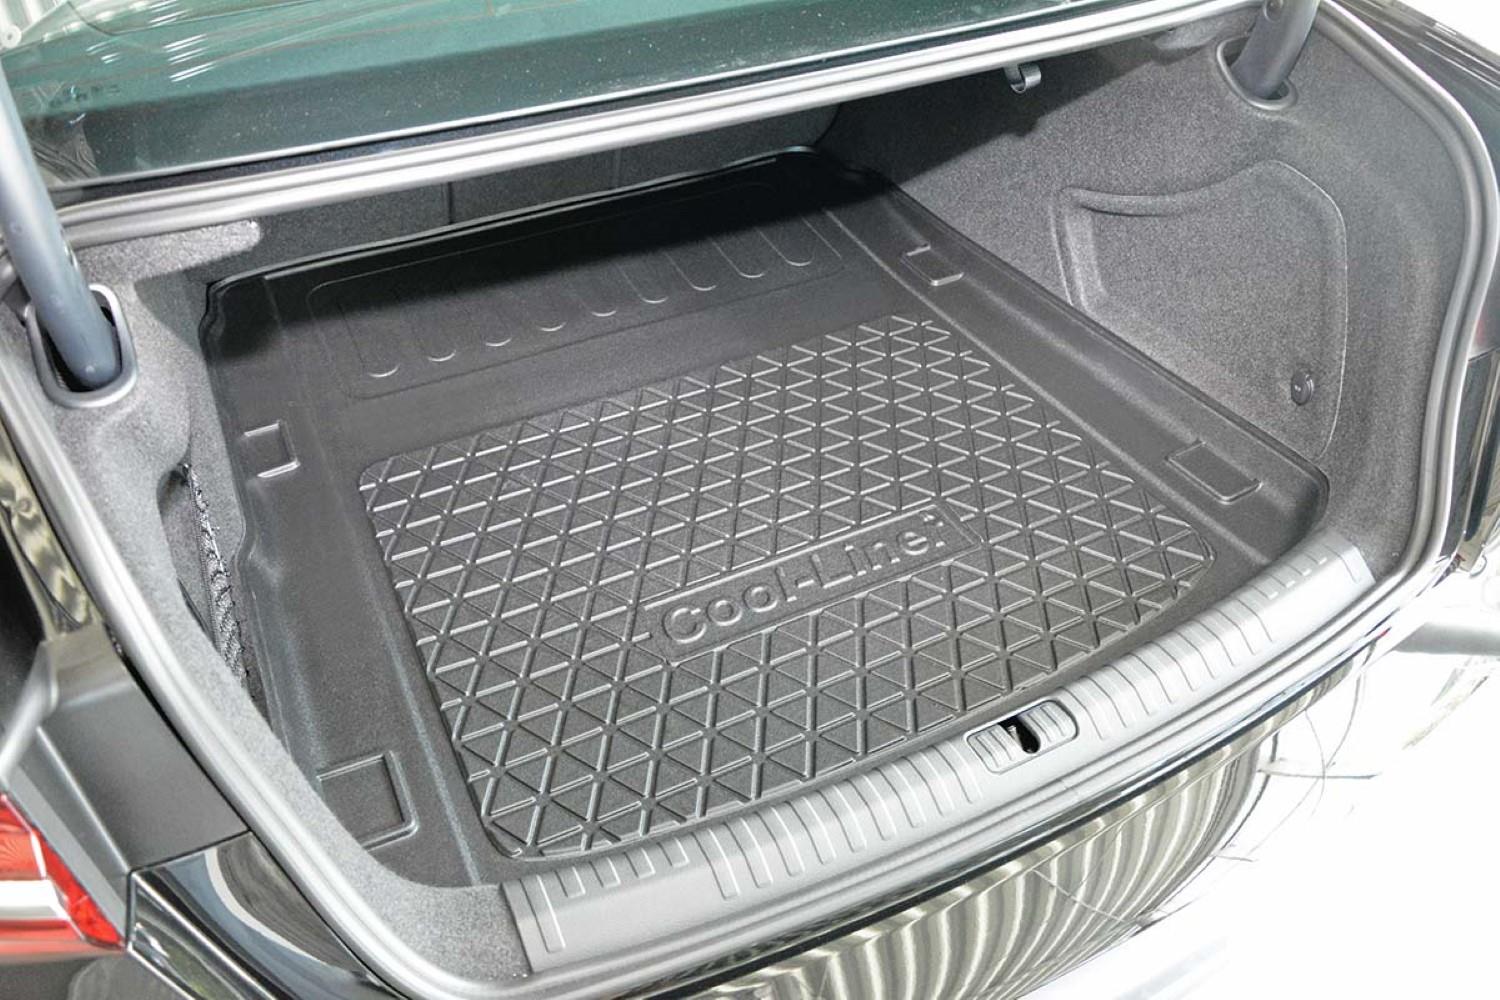 Kofferraumwanne für Audi A6 Avant: Unübertrefflich!